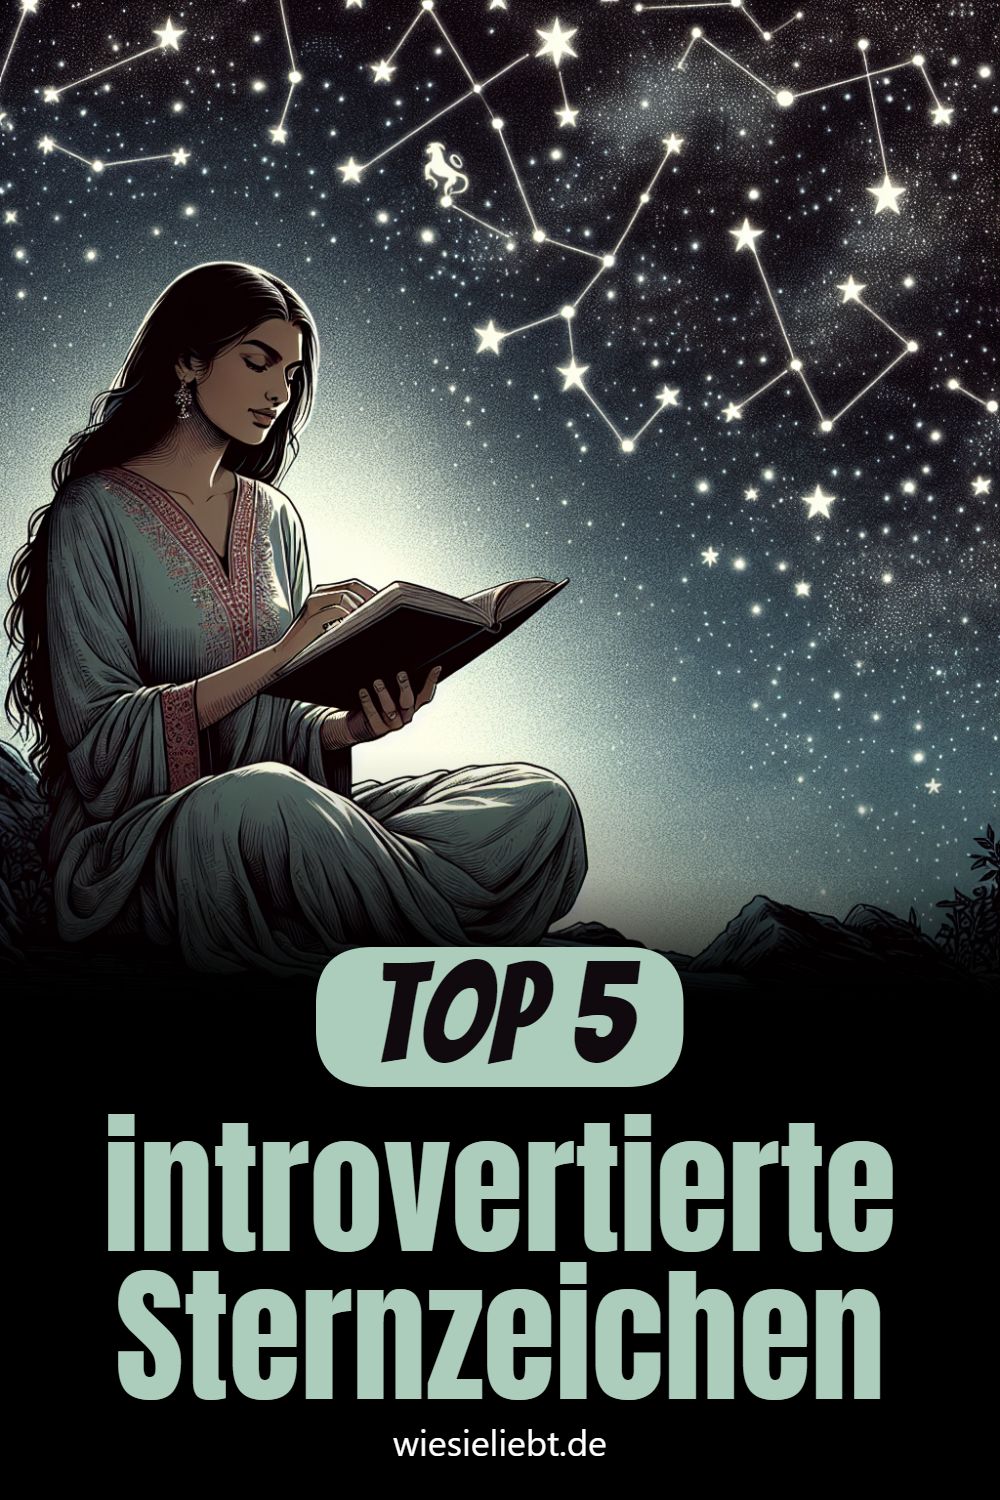 Top 5 introvertierte Sternzeichen